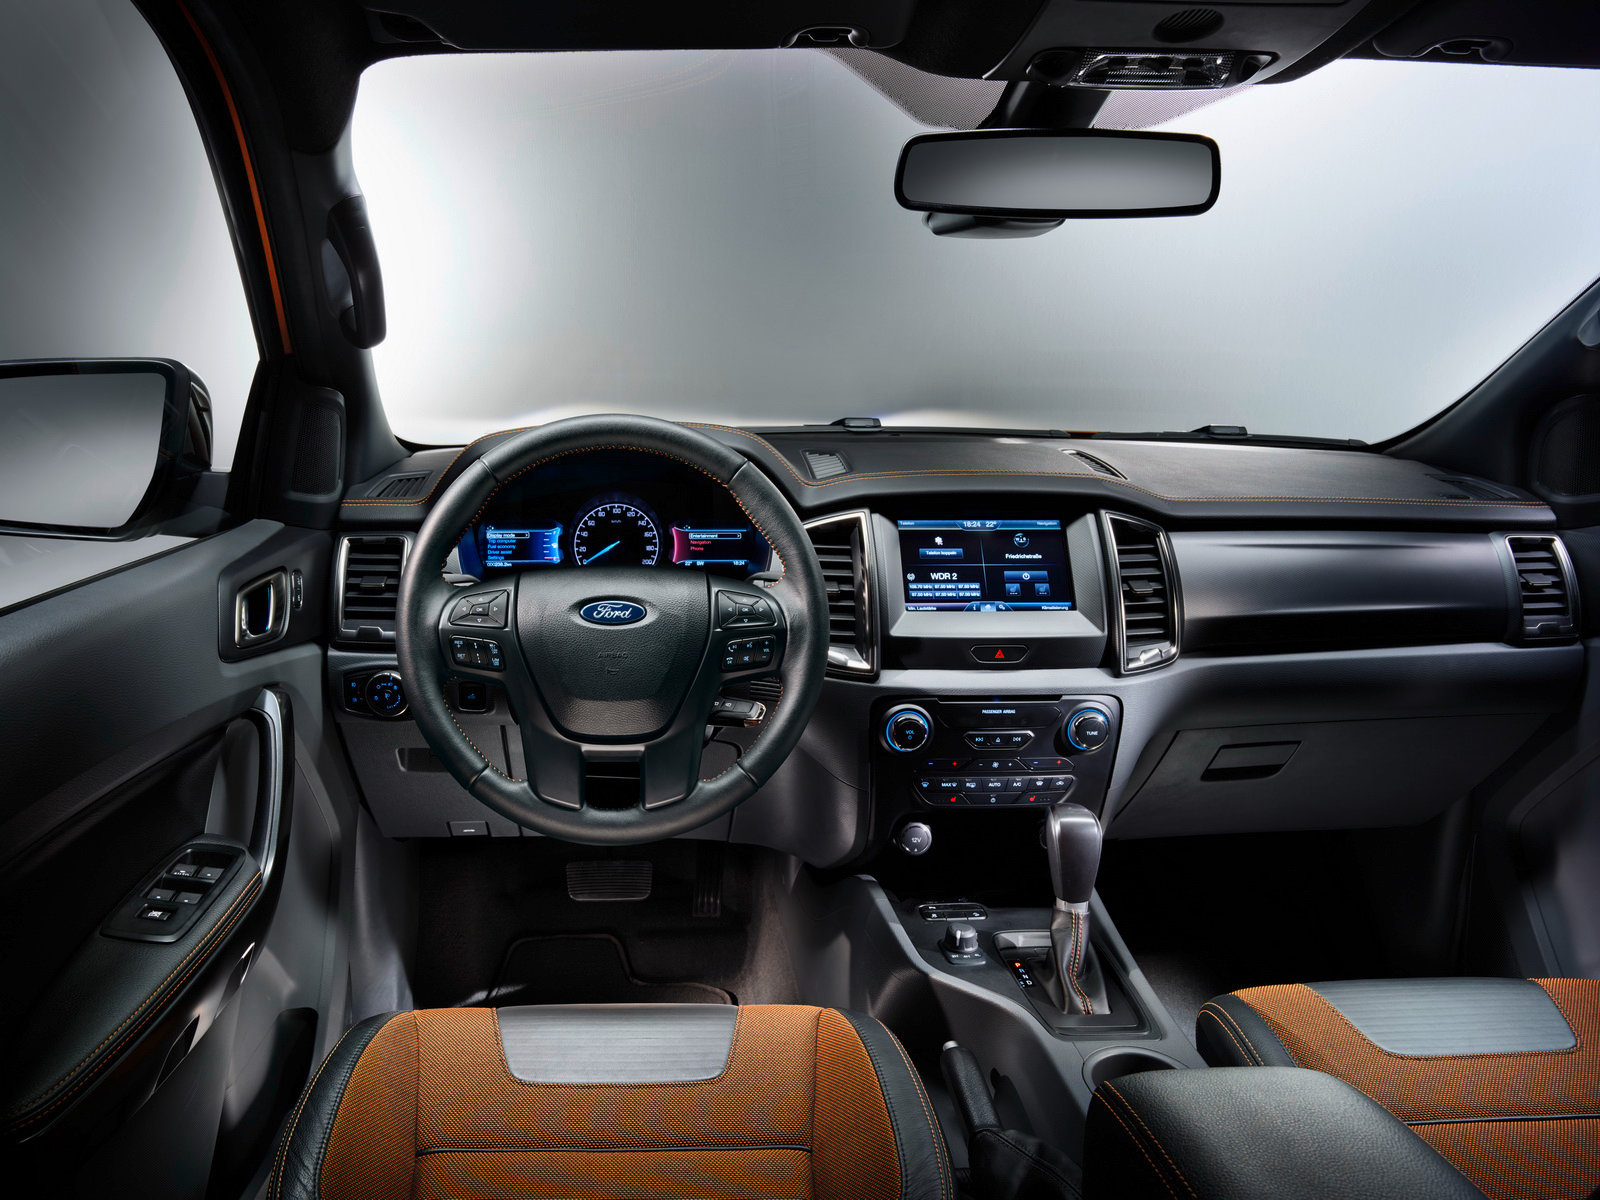 “Vua bán tải” Ford Ranger facelift 2015 tiếp tục mở rộng thị trường